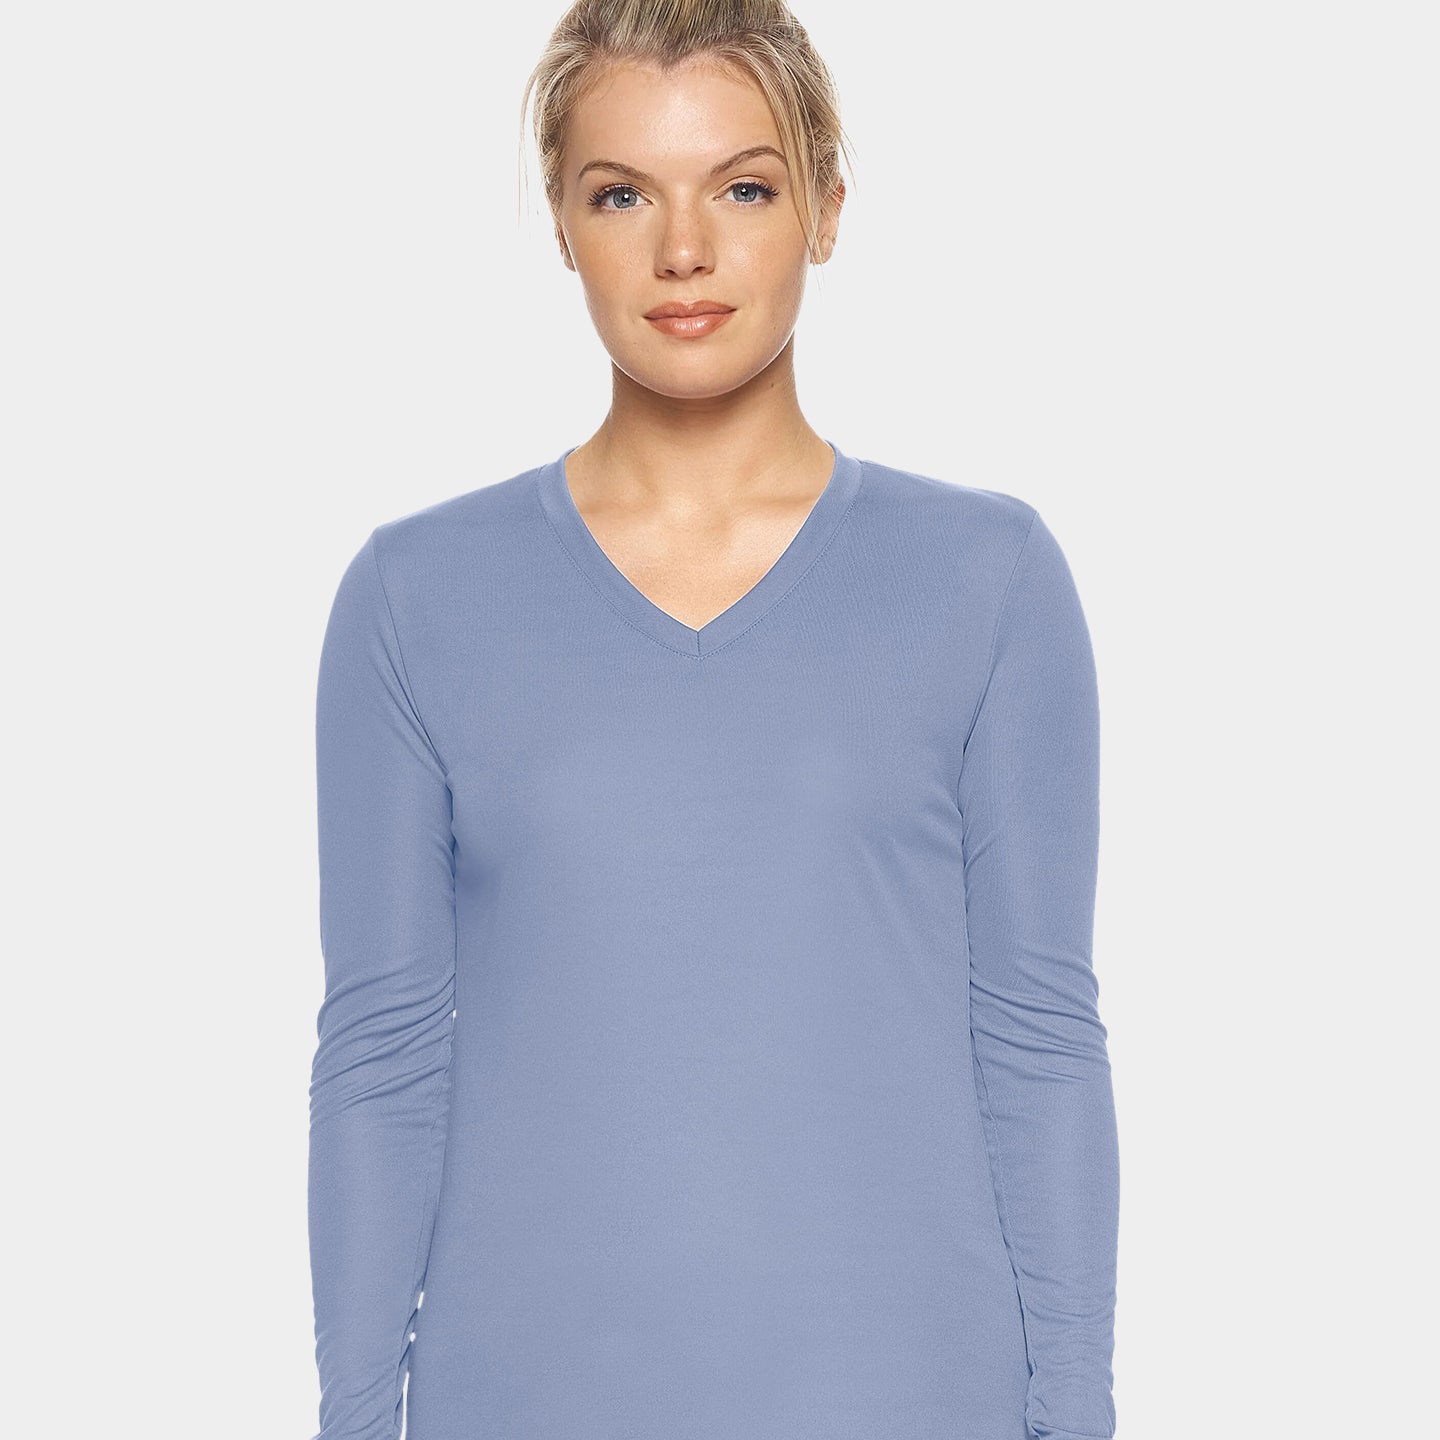 Expert Brand DriMax Women's Performance V-Neck Long Sleeve Shirt, 3XL, Steel A1